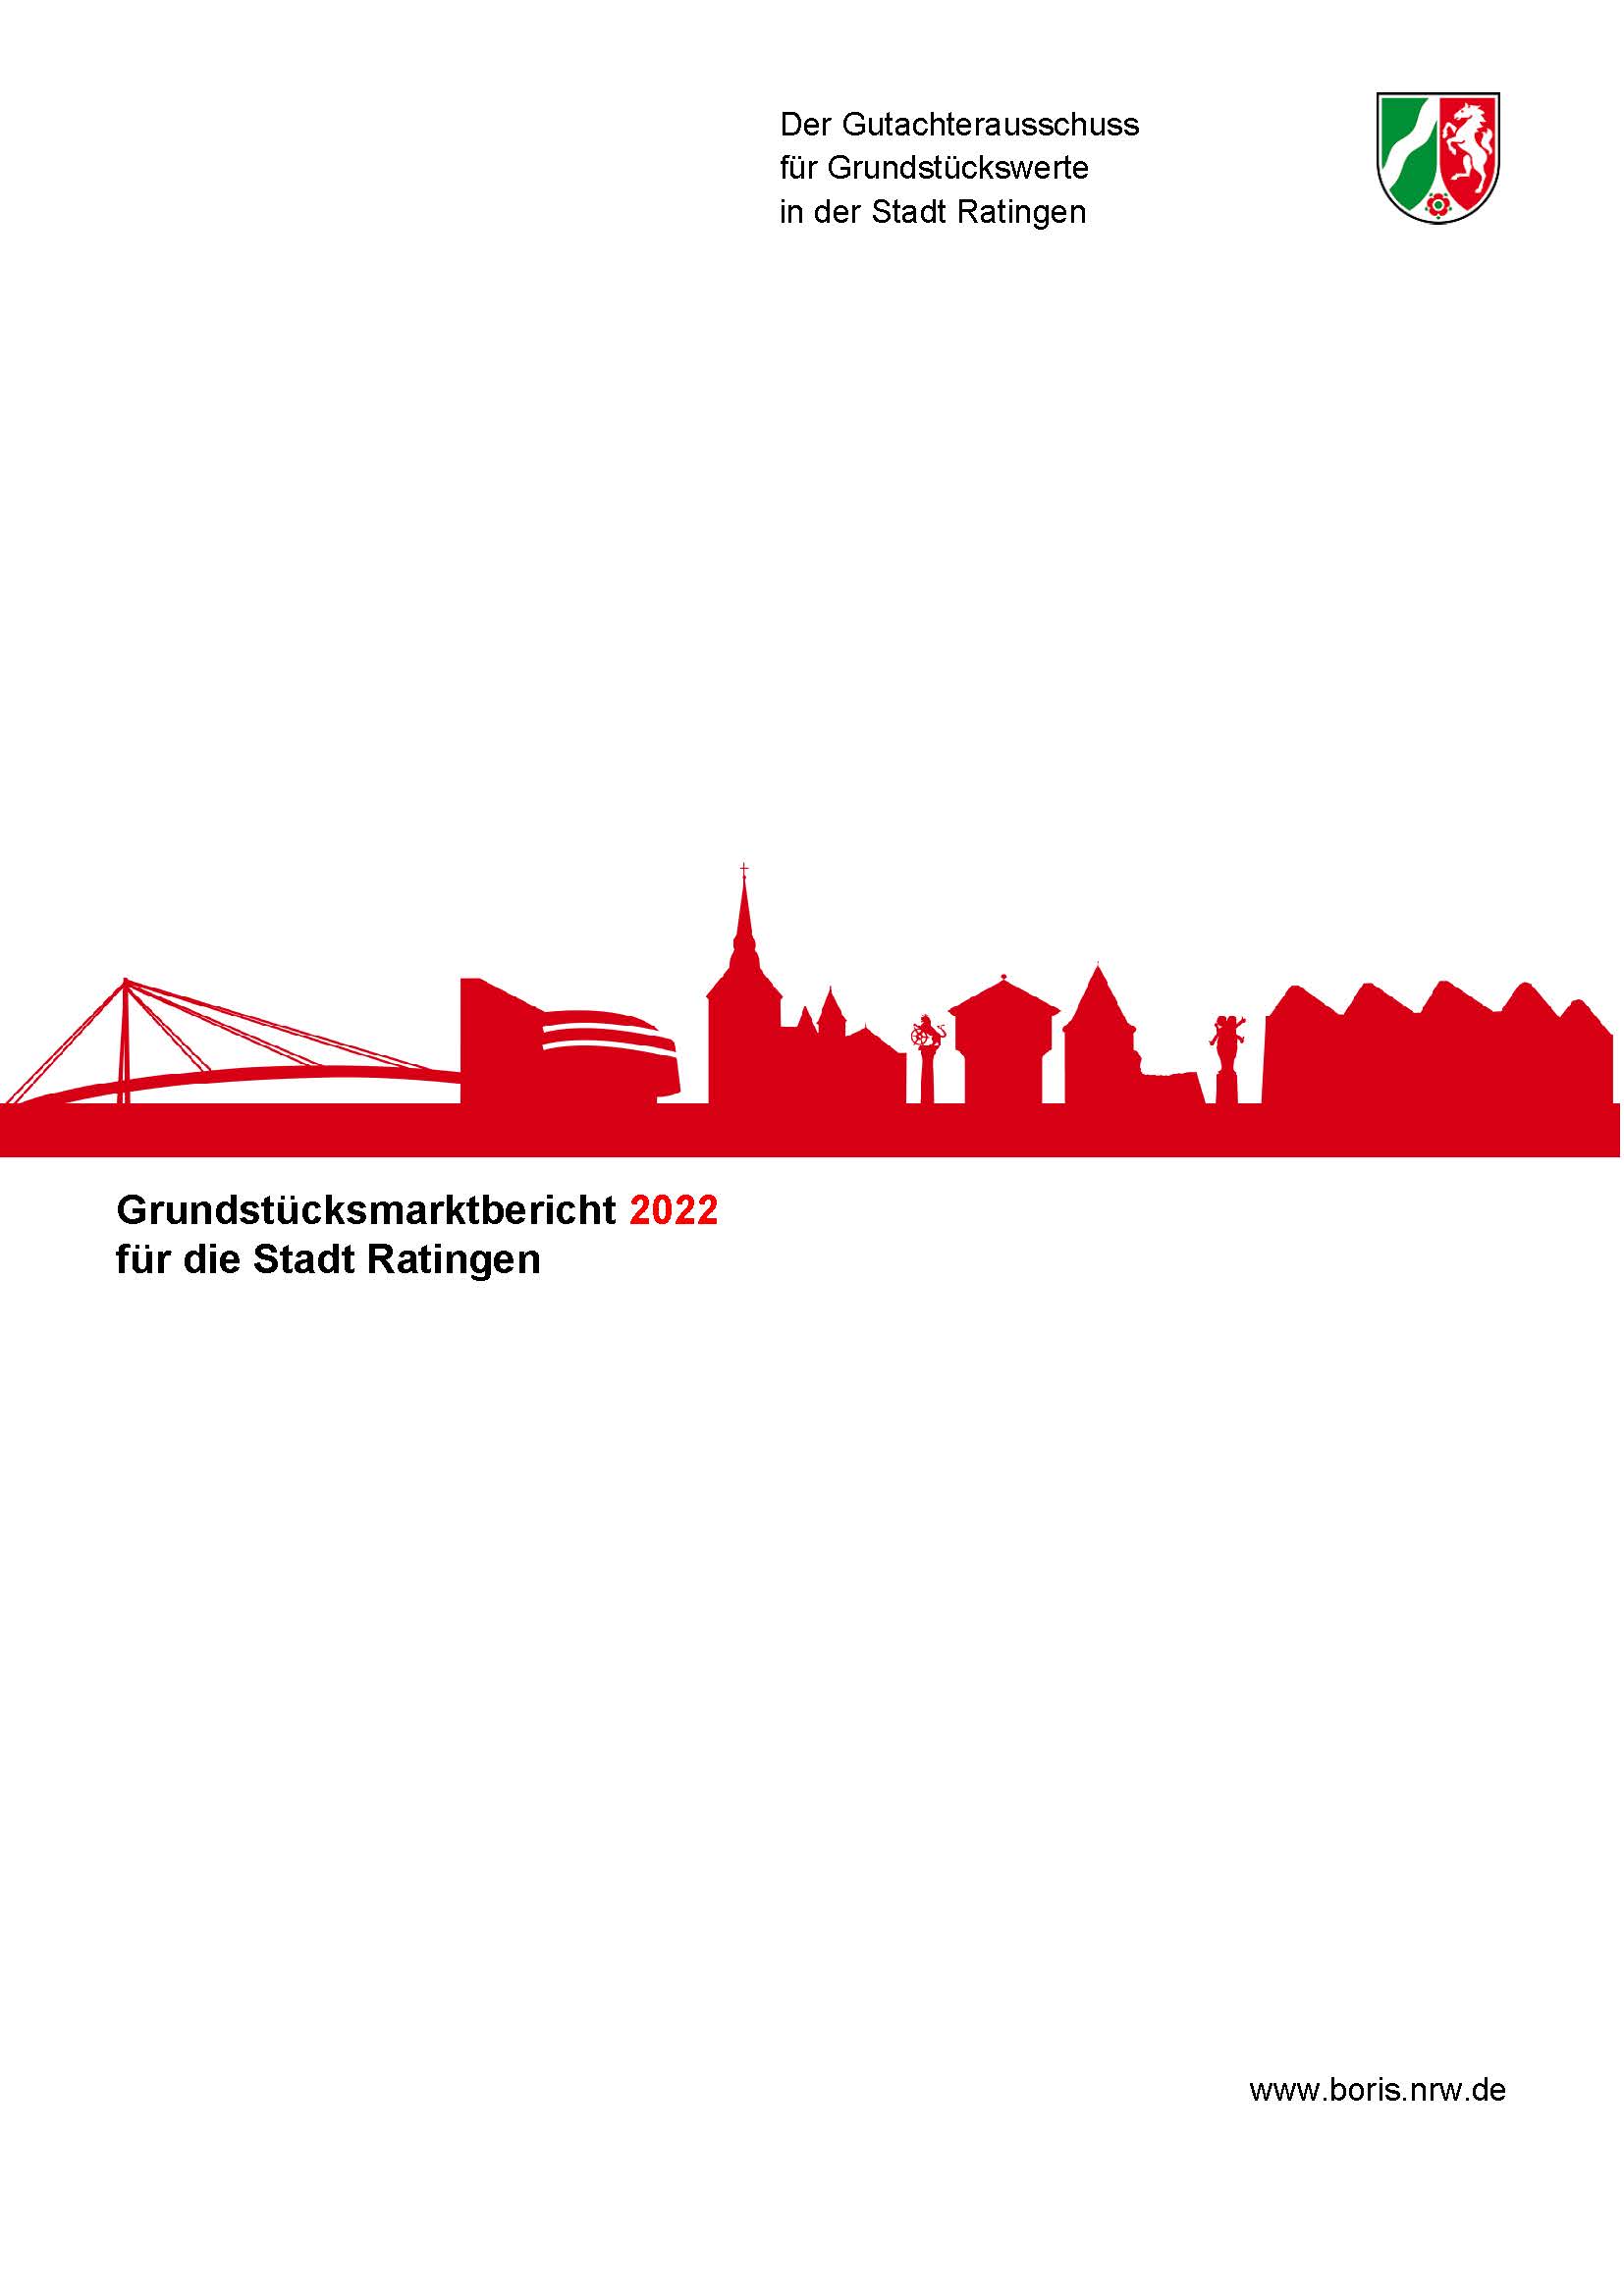 Grundstücksmarktbericht 2022 für die Stadt Ratingen